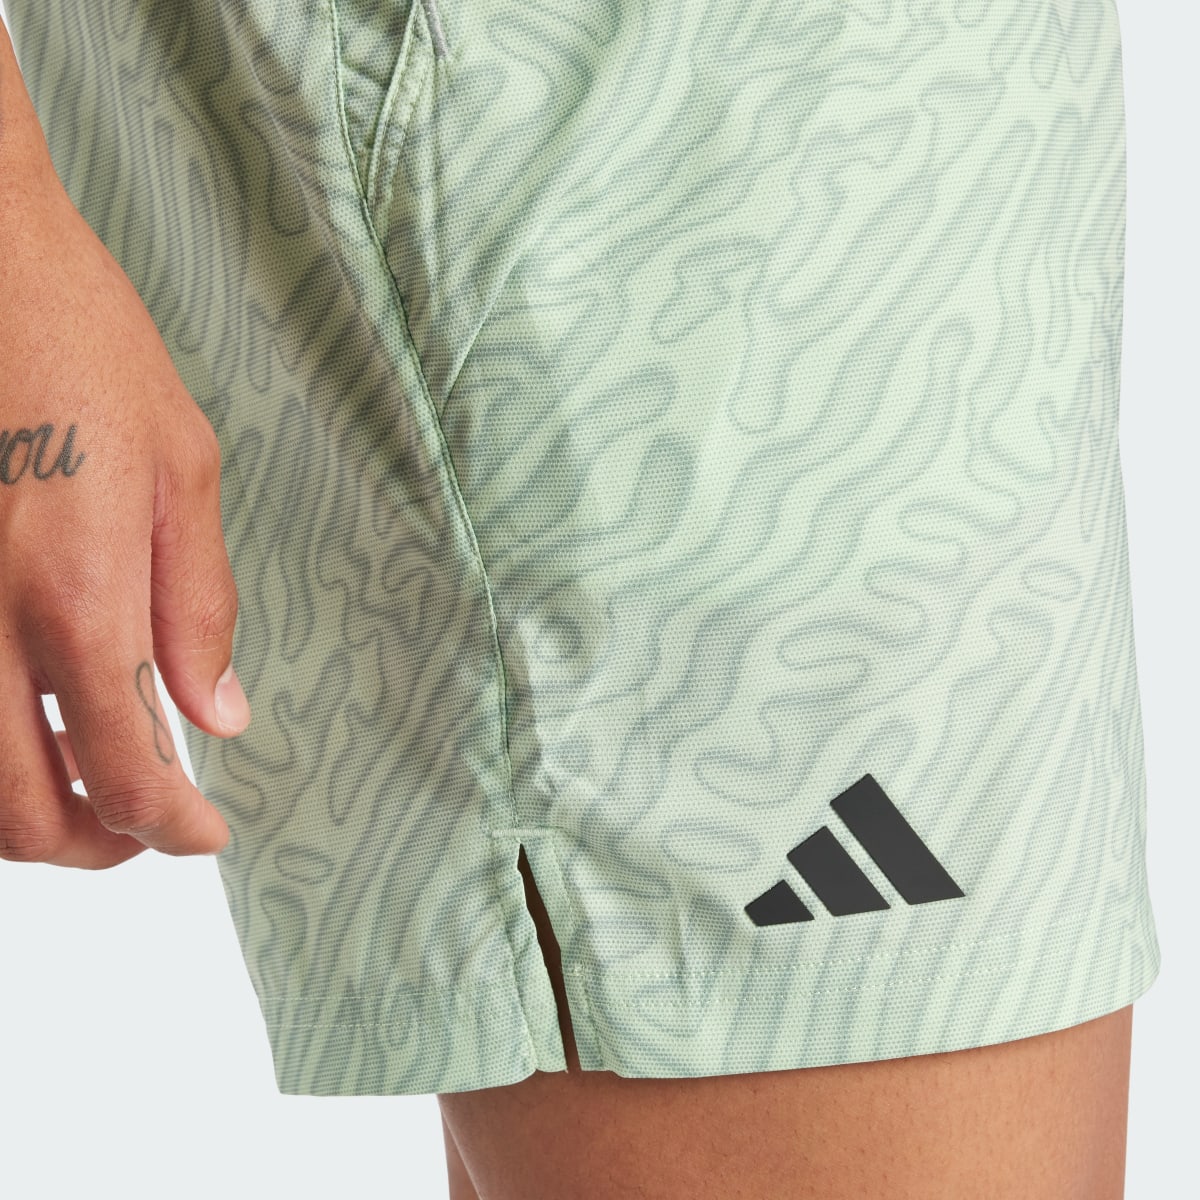 Adidas Tennis HEAT.RDY Pro Printed Ergo 7-Inch Shorts. 6